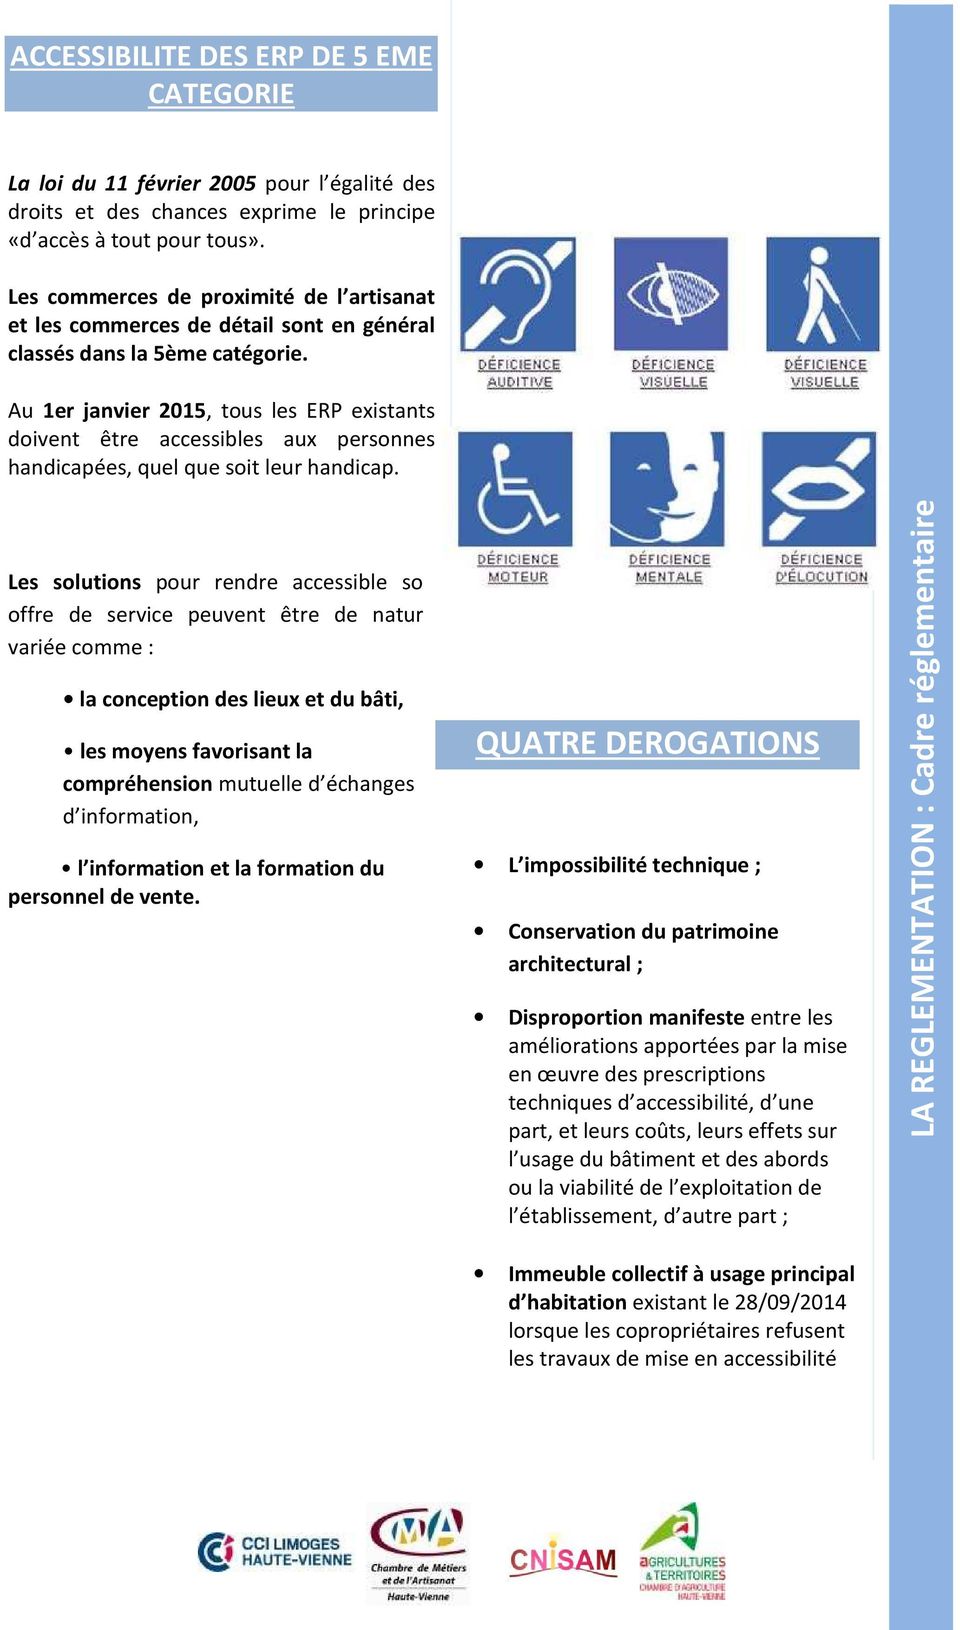 Au 1er janvier 2015, tous les ERP existants doivent être accessibles aux personnes handicapées, quel que soit leur handicap.